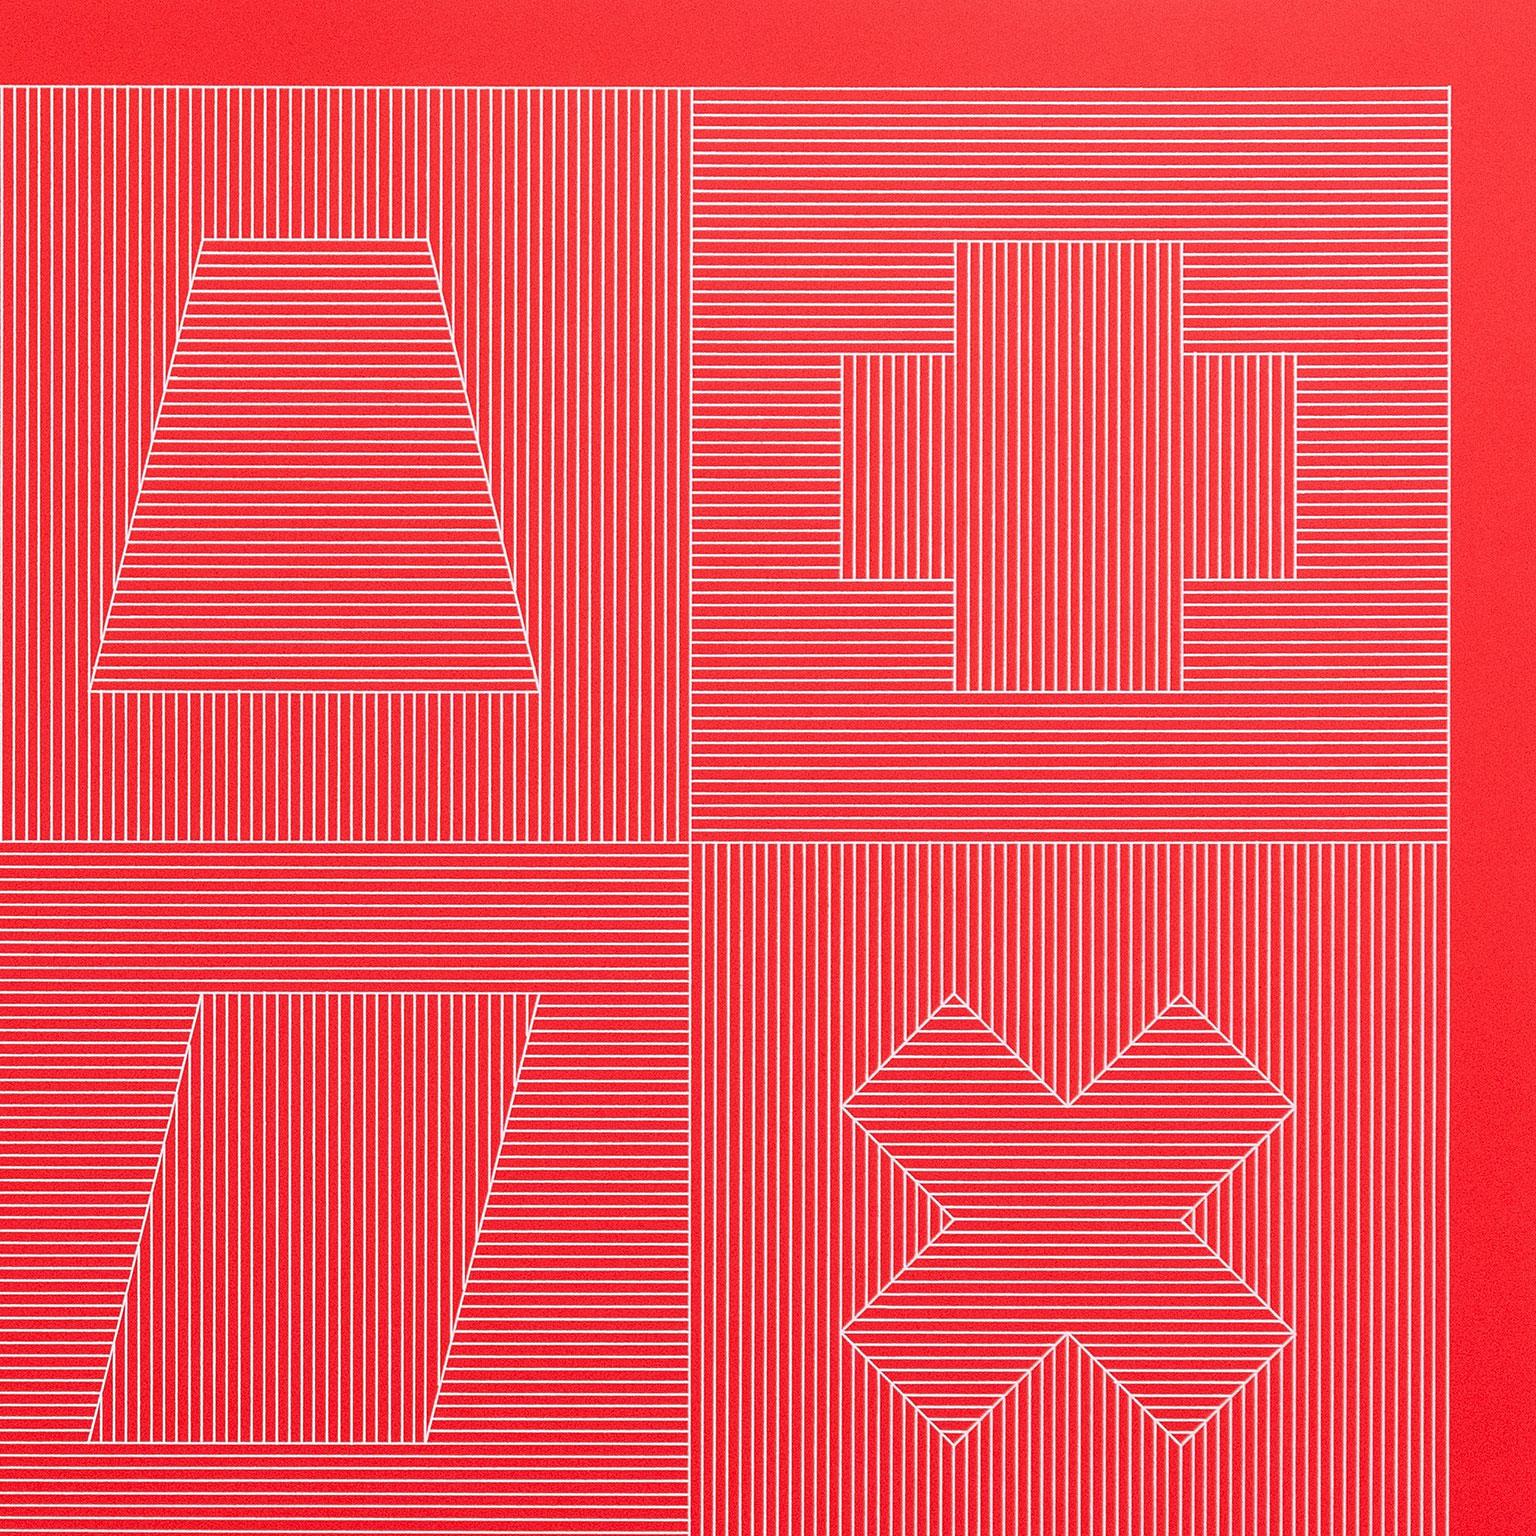 Vier Seiten des Turms – Rot (Geometrische Abstraktion), Print, von Sol LeWitt